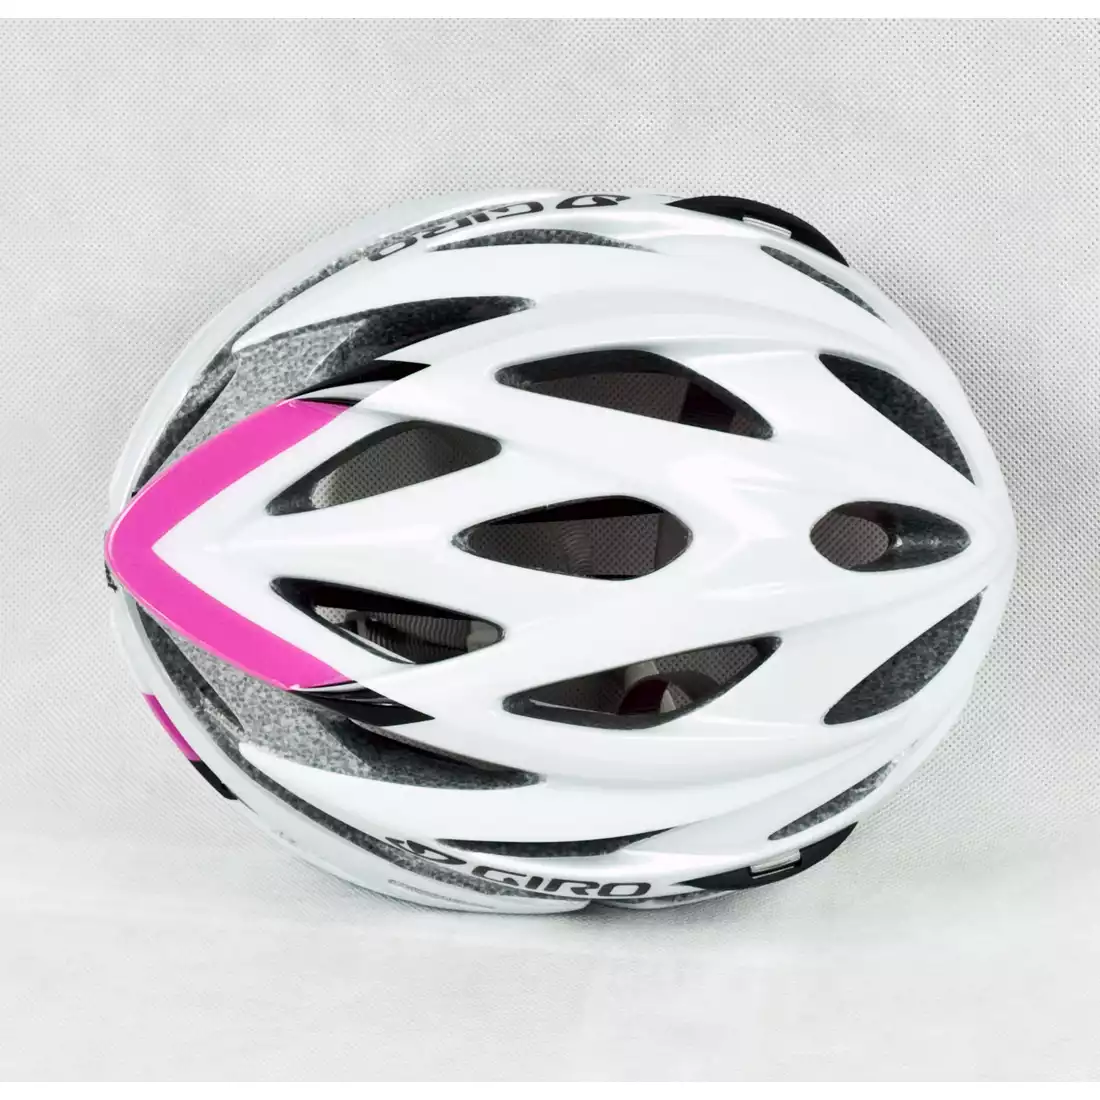 GIRO SONNET damski kask rowerowy, biało-różowy